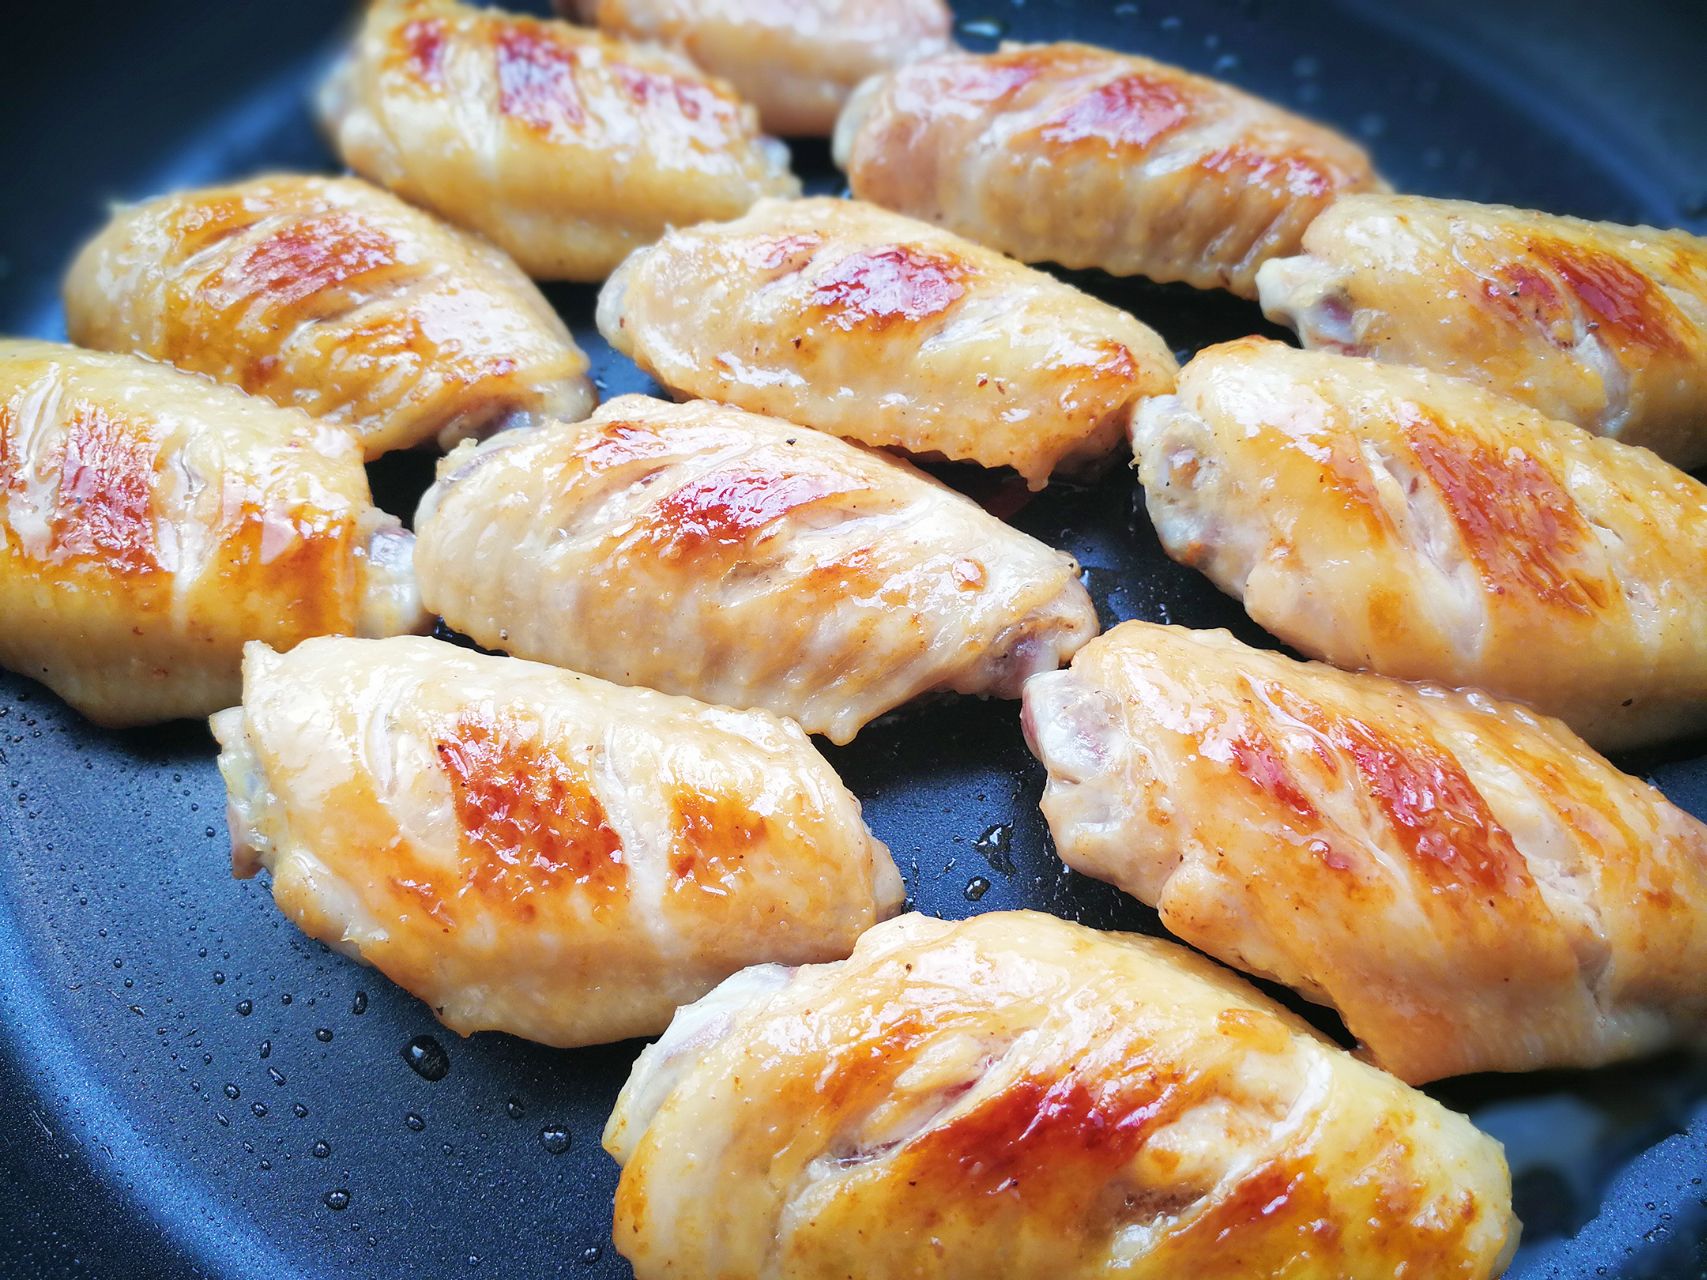 步骤五:将鸡翅在盘中摆好,然后在鸡翅上撒上胡椒粉和自己喜欢的香辛